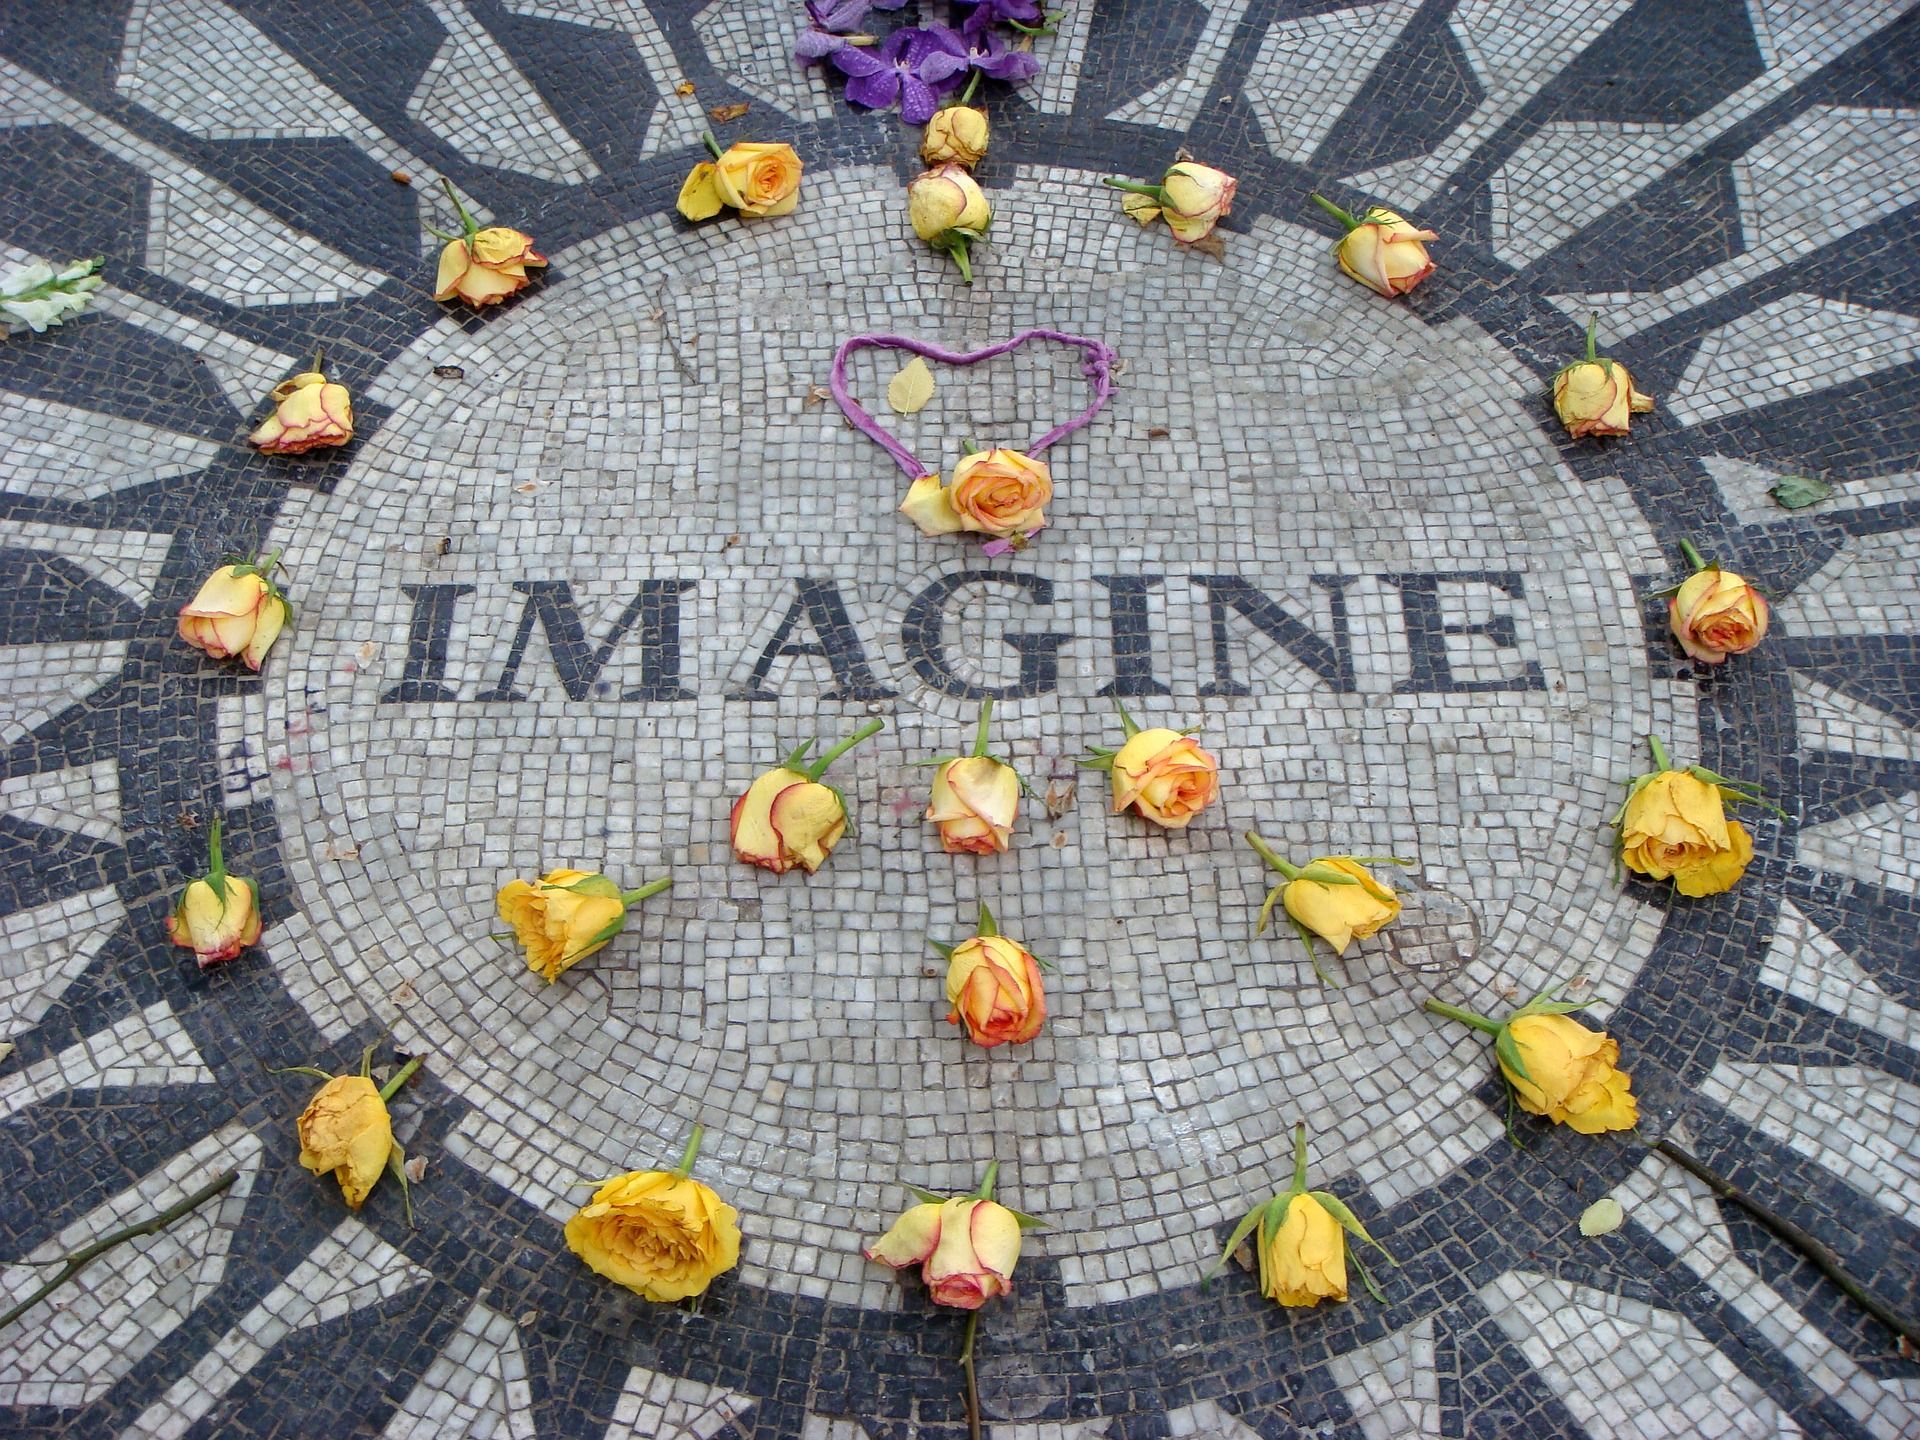 Strawberry Fields, el memorial de John Lennon en Central Park (Nueva York)